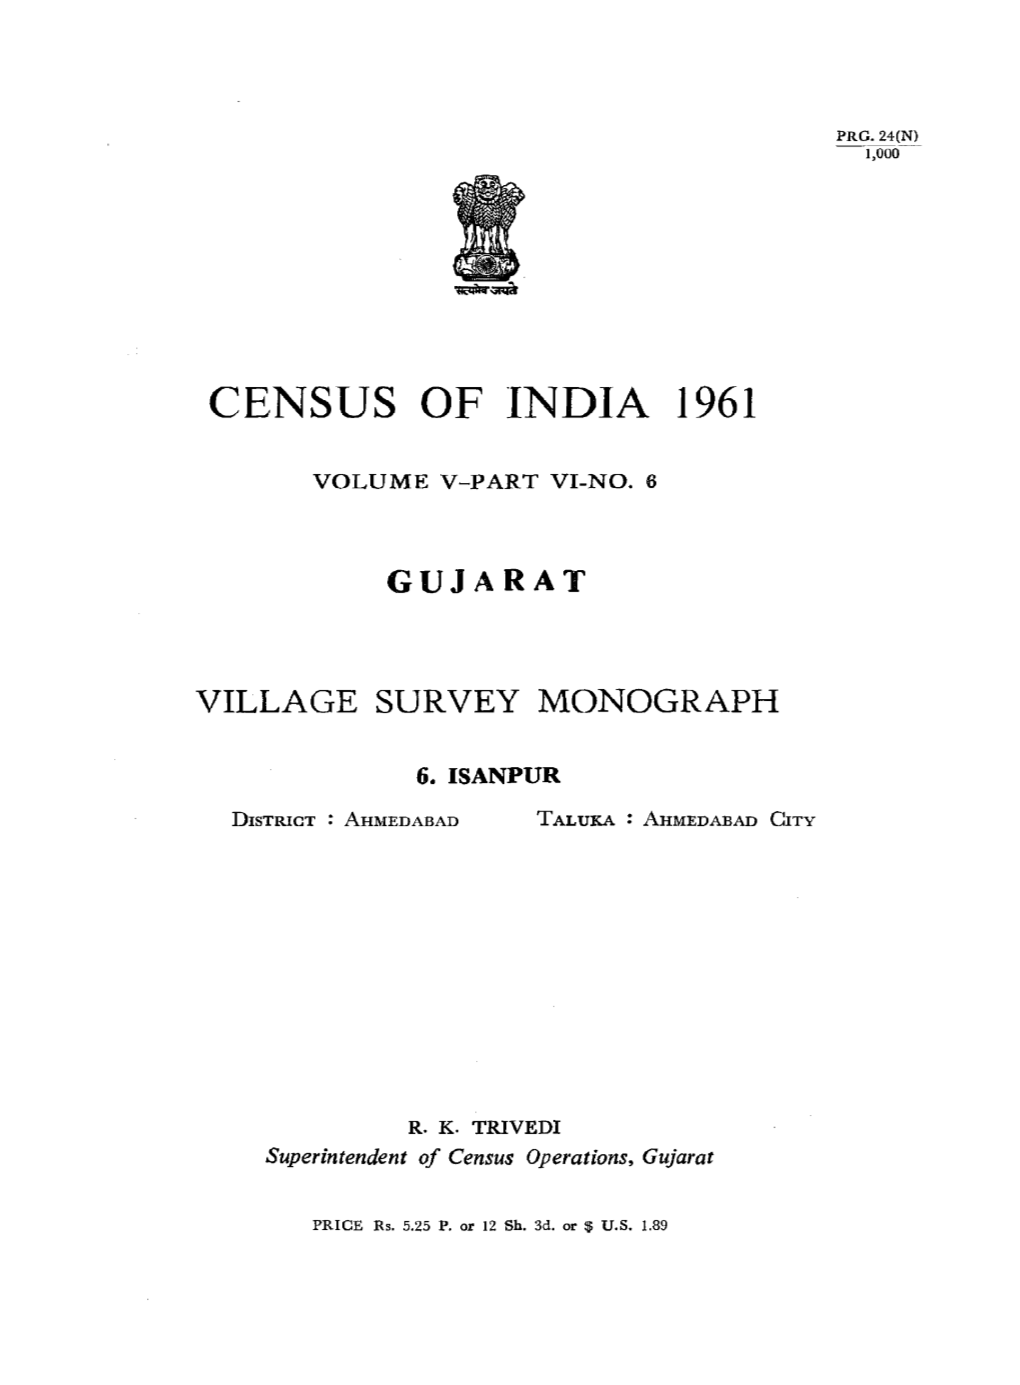 Village Survey Monograph, Isanpur, Part VI, No-6, Vol-V